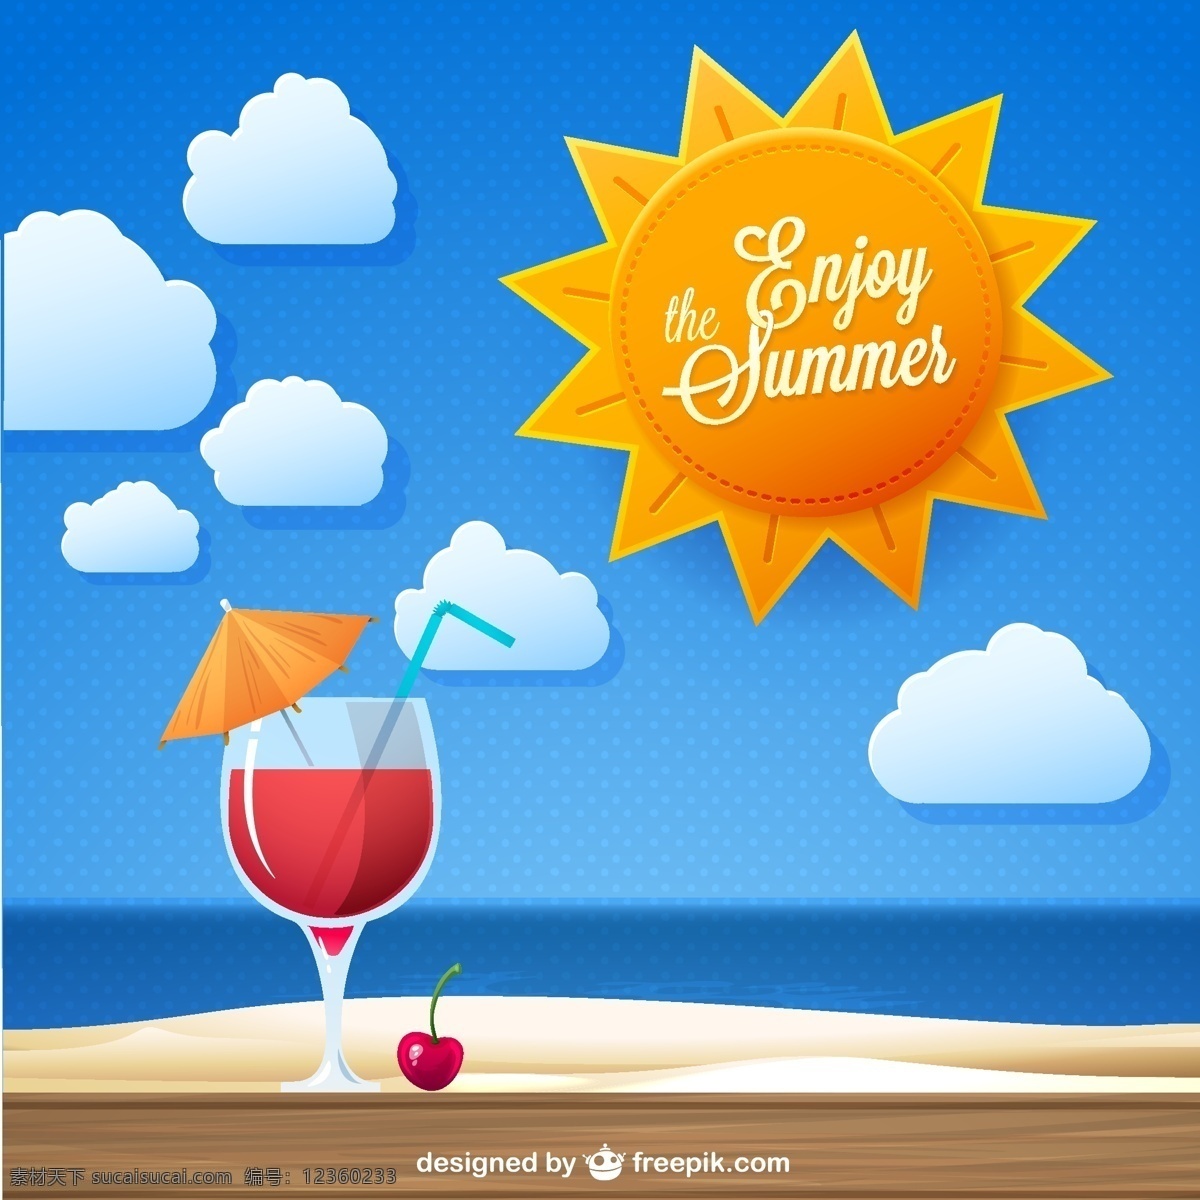 夏日 度假 背景 ai格式 海滩 鸡尾酒 剪纸 矢量图 太阳 夏季 樱桃 云朵